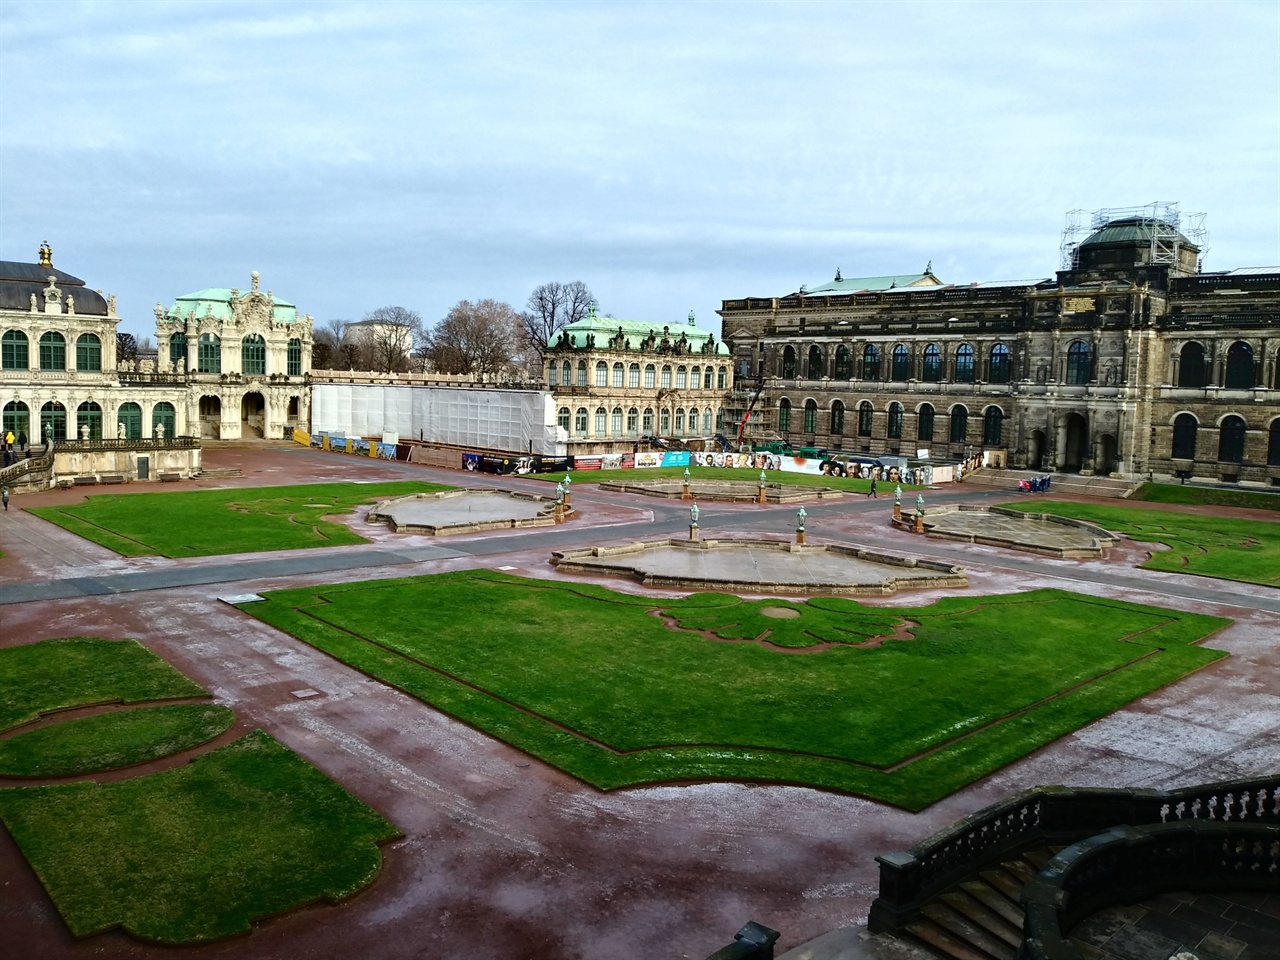 츠빙거 궁전 전경 베르사유 궁전을 모방한 츠빙거 궁전은 '여전히' 공사중이다. 제2차 세계대전 중 폭격으로 대부분 파괴되었지만, 복원은 더디기만 하다. 결코 서두르는 법이 없는 독일 사회의 이면을 볼 수 있다.